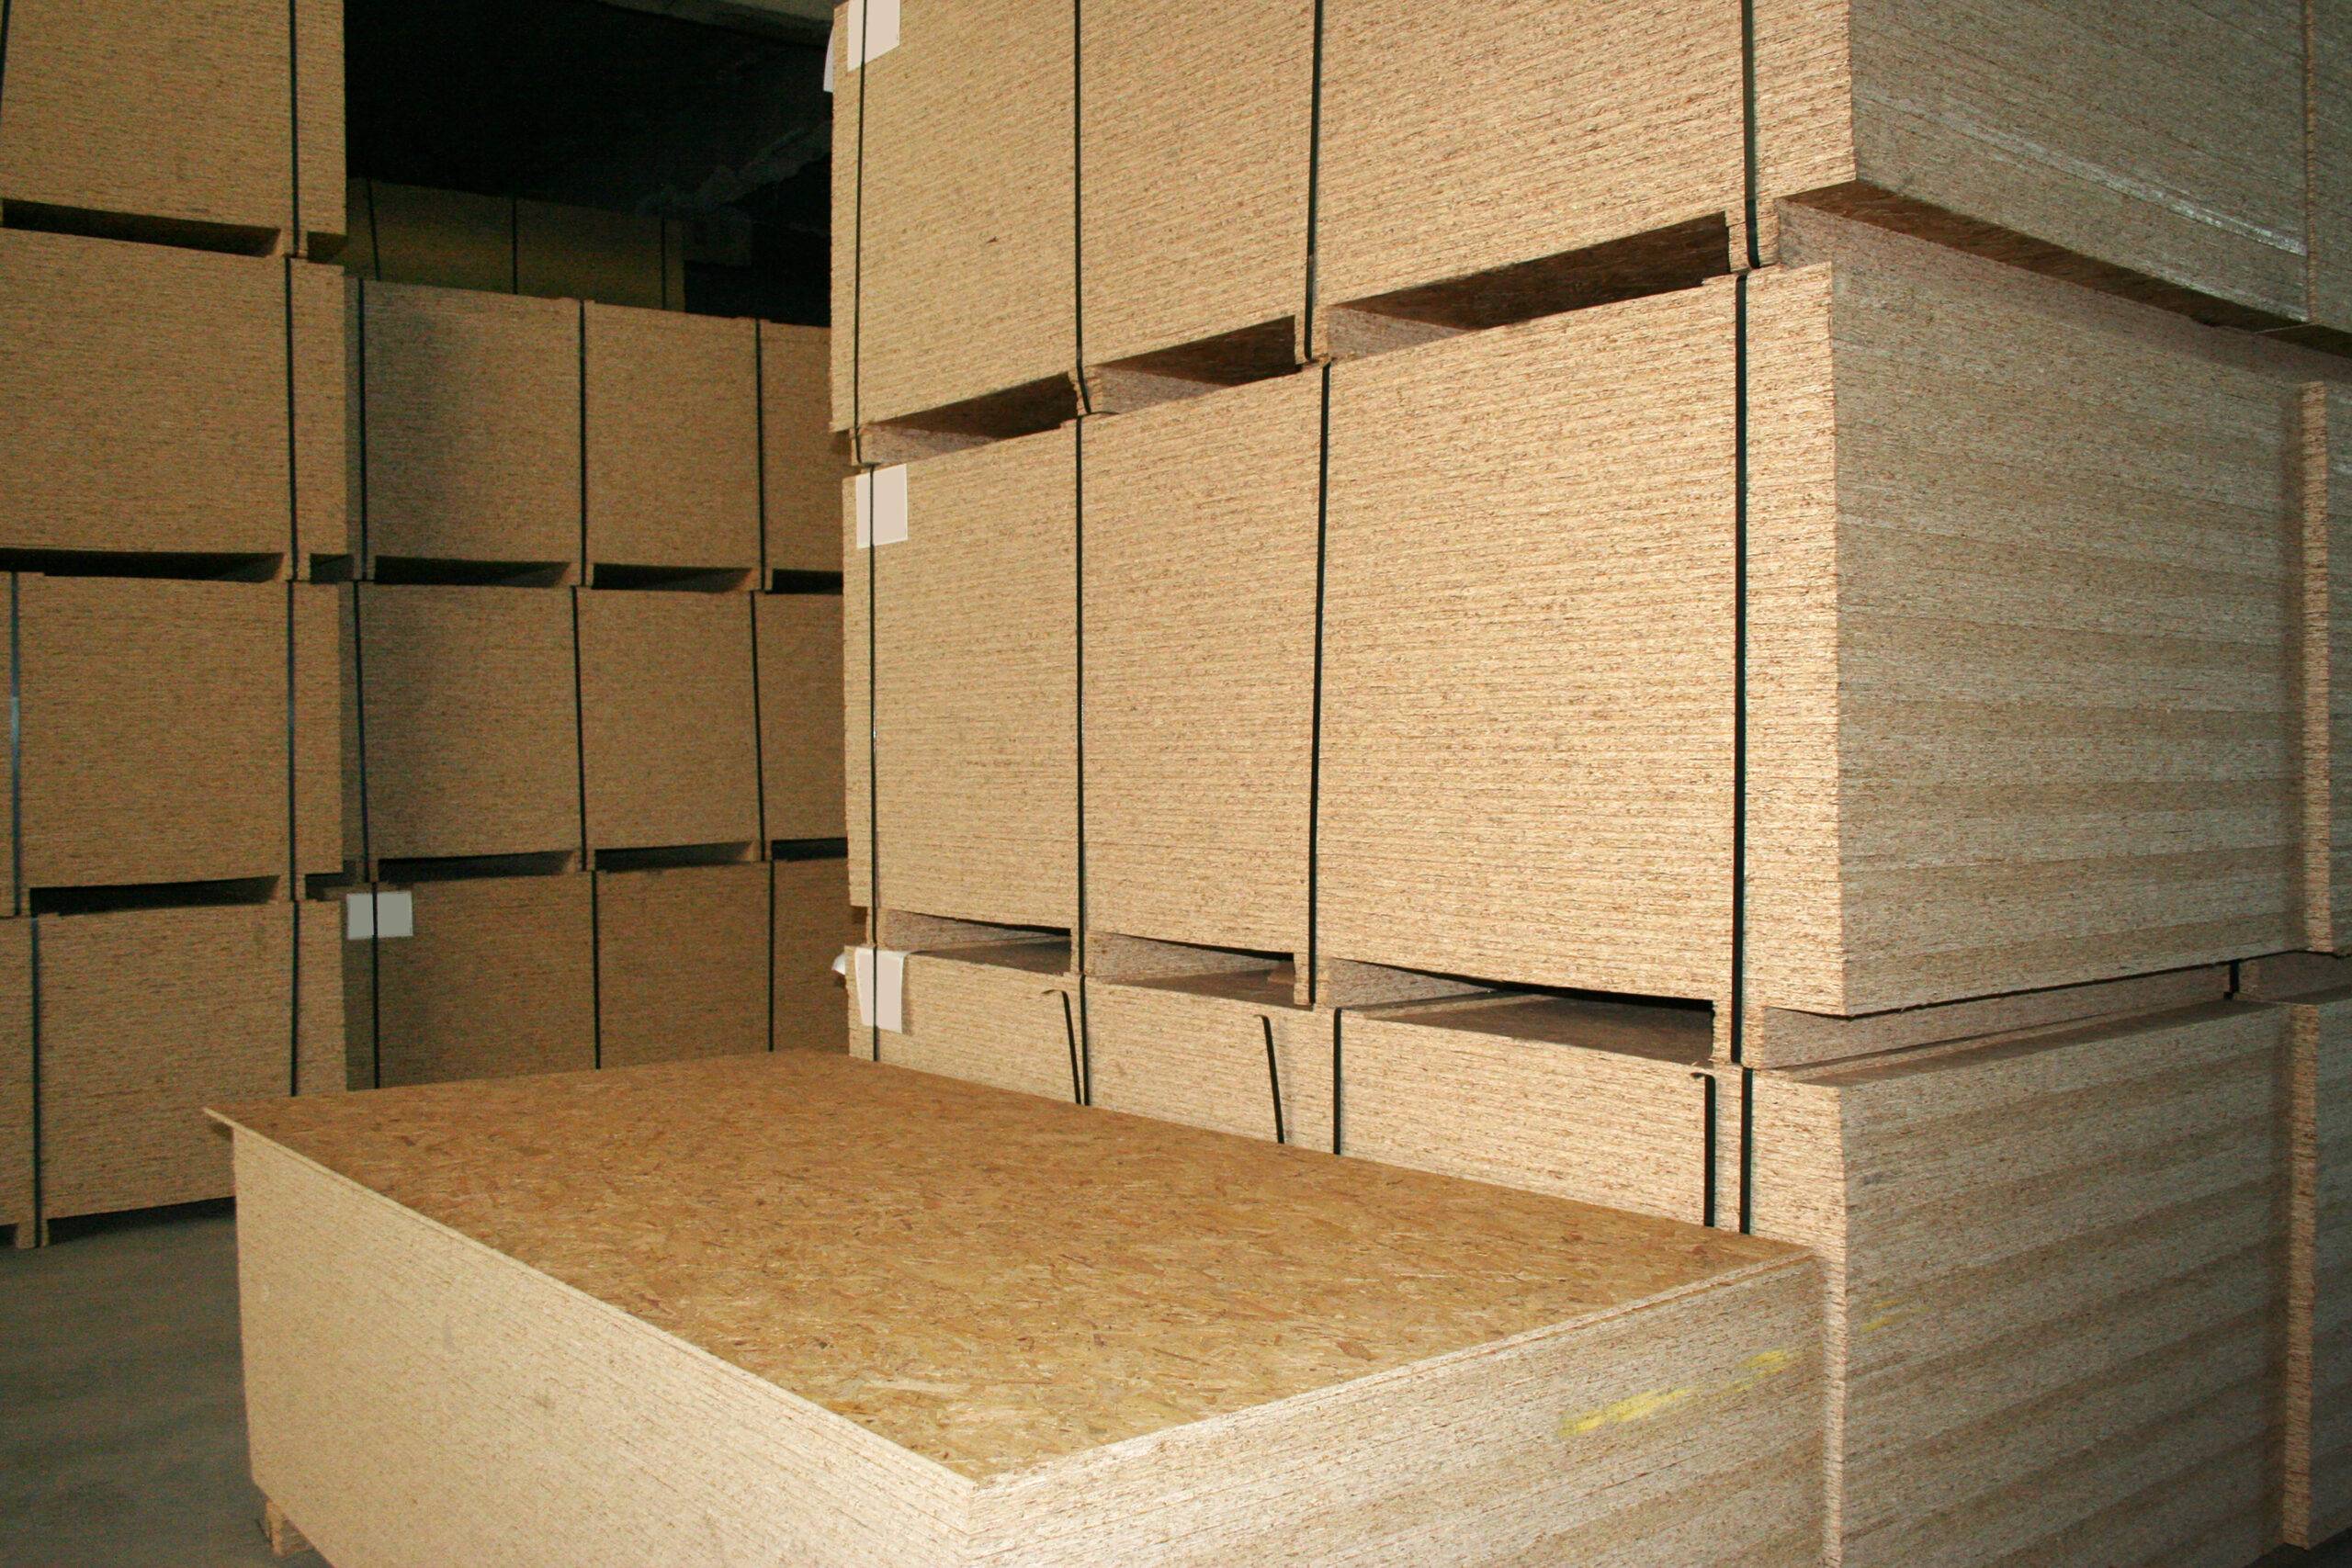 Stacks of OSB boards in storage.